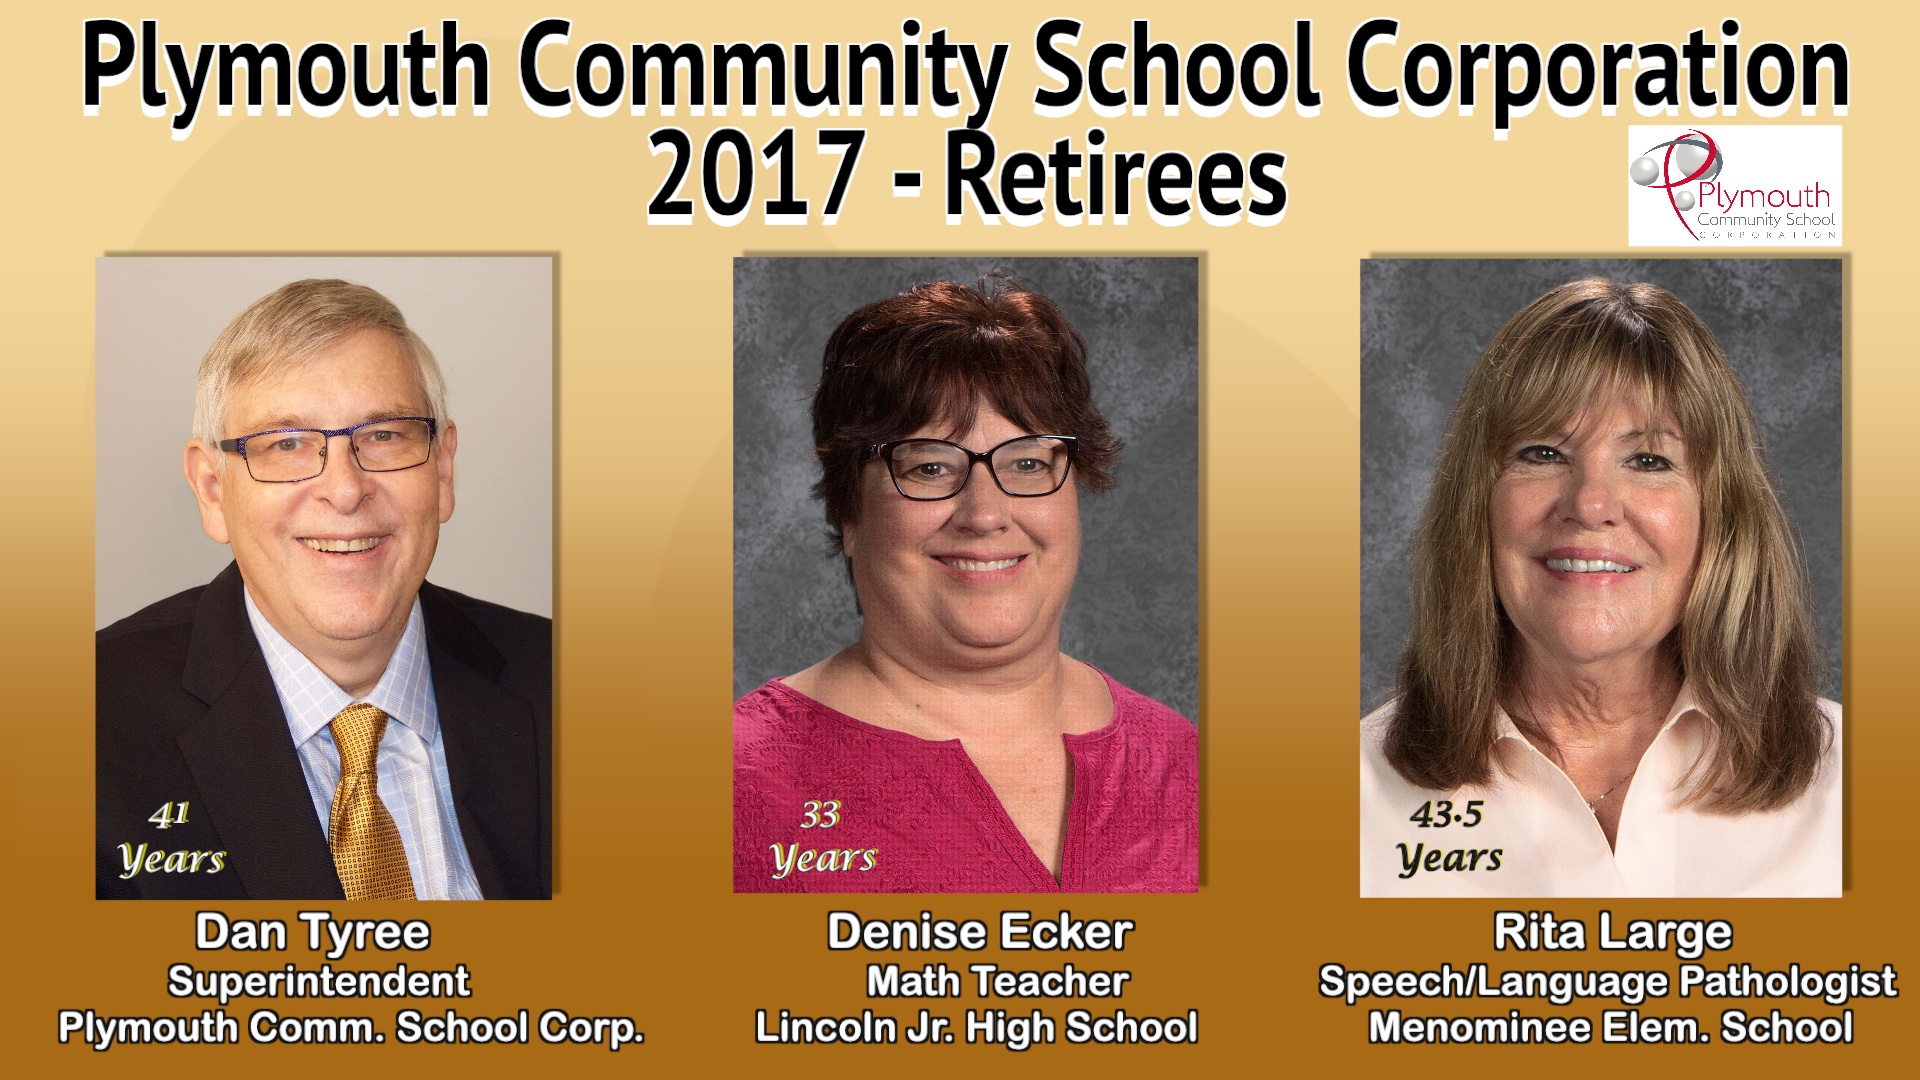 PCSC 2017 Retirees- Dan Tyree, Denise Ecker, and Rita Large